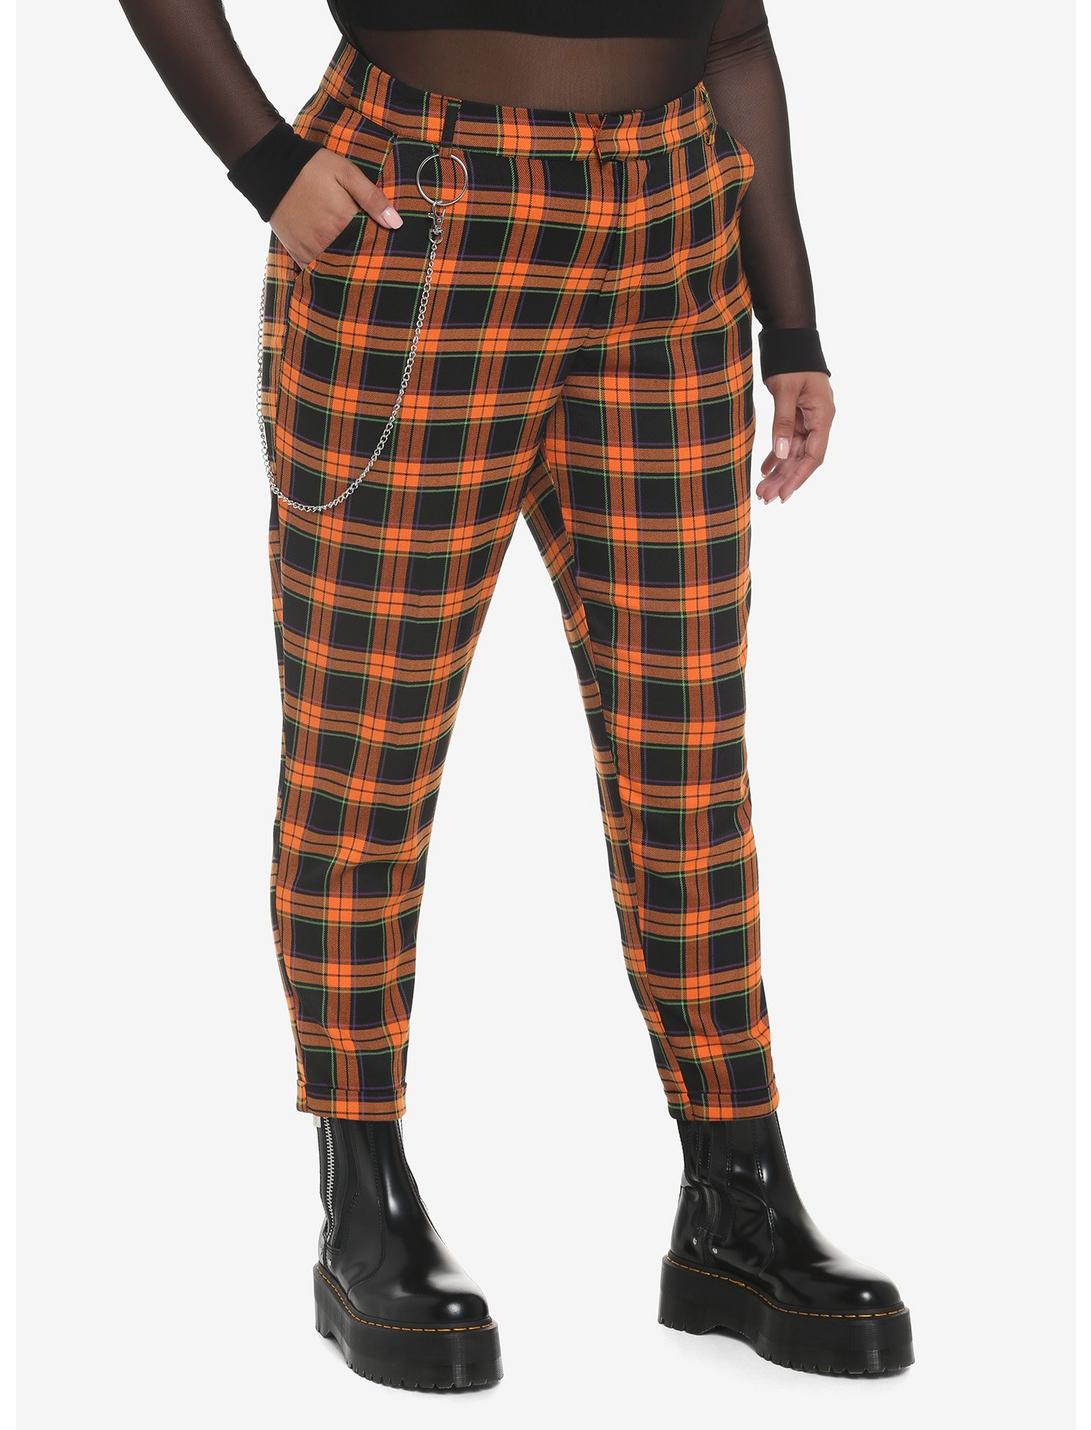 Orange Plaid Side Chain Pants Plus Size, ORANGE, hi-res